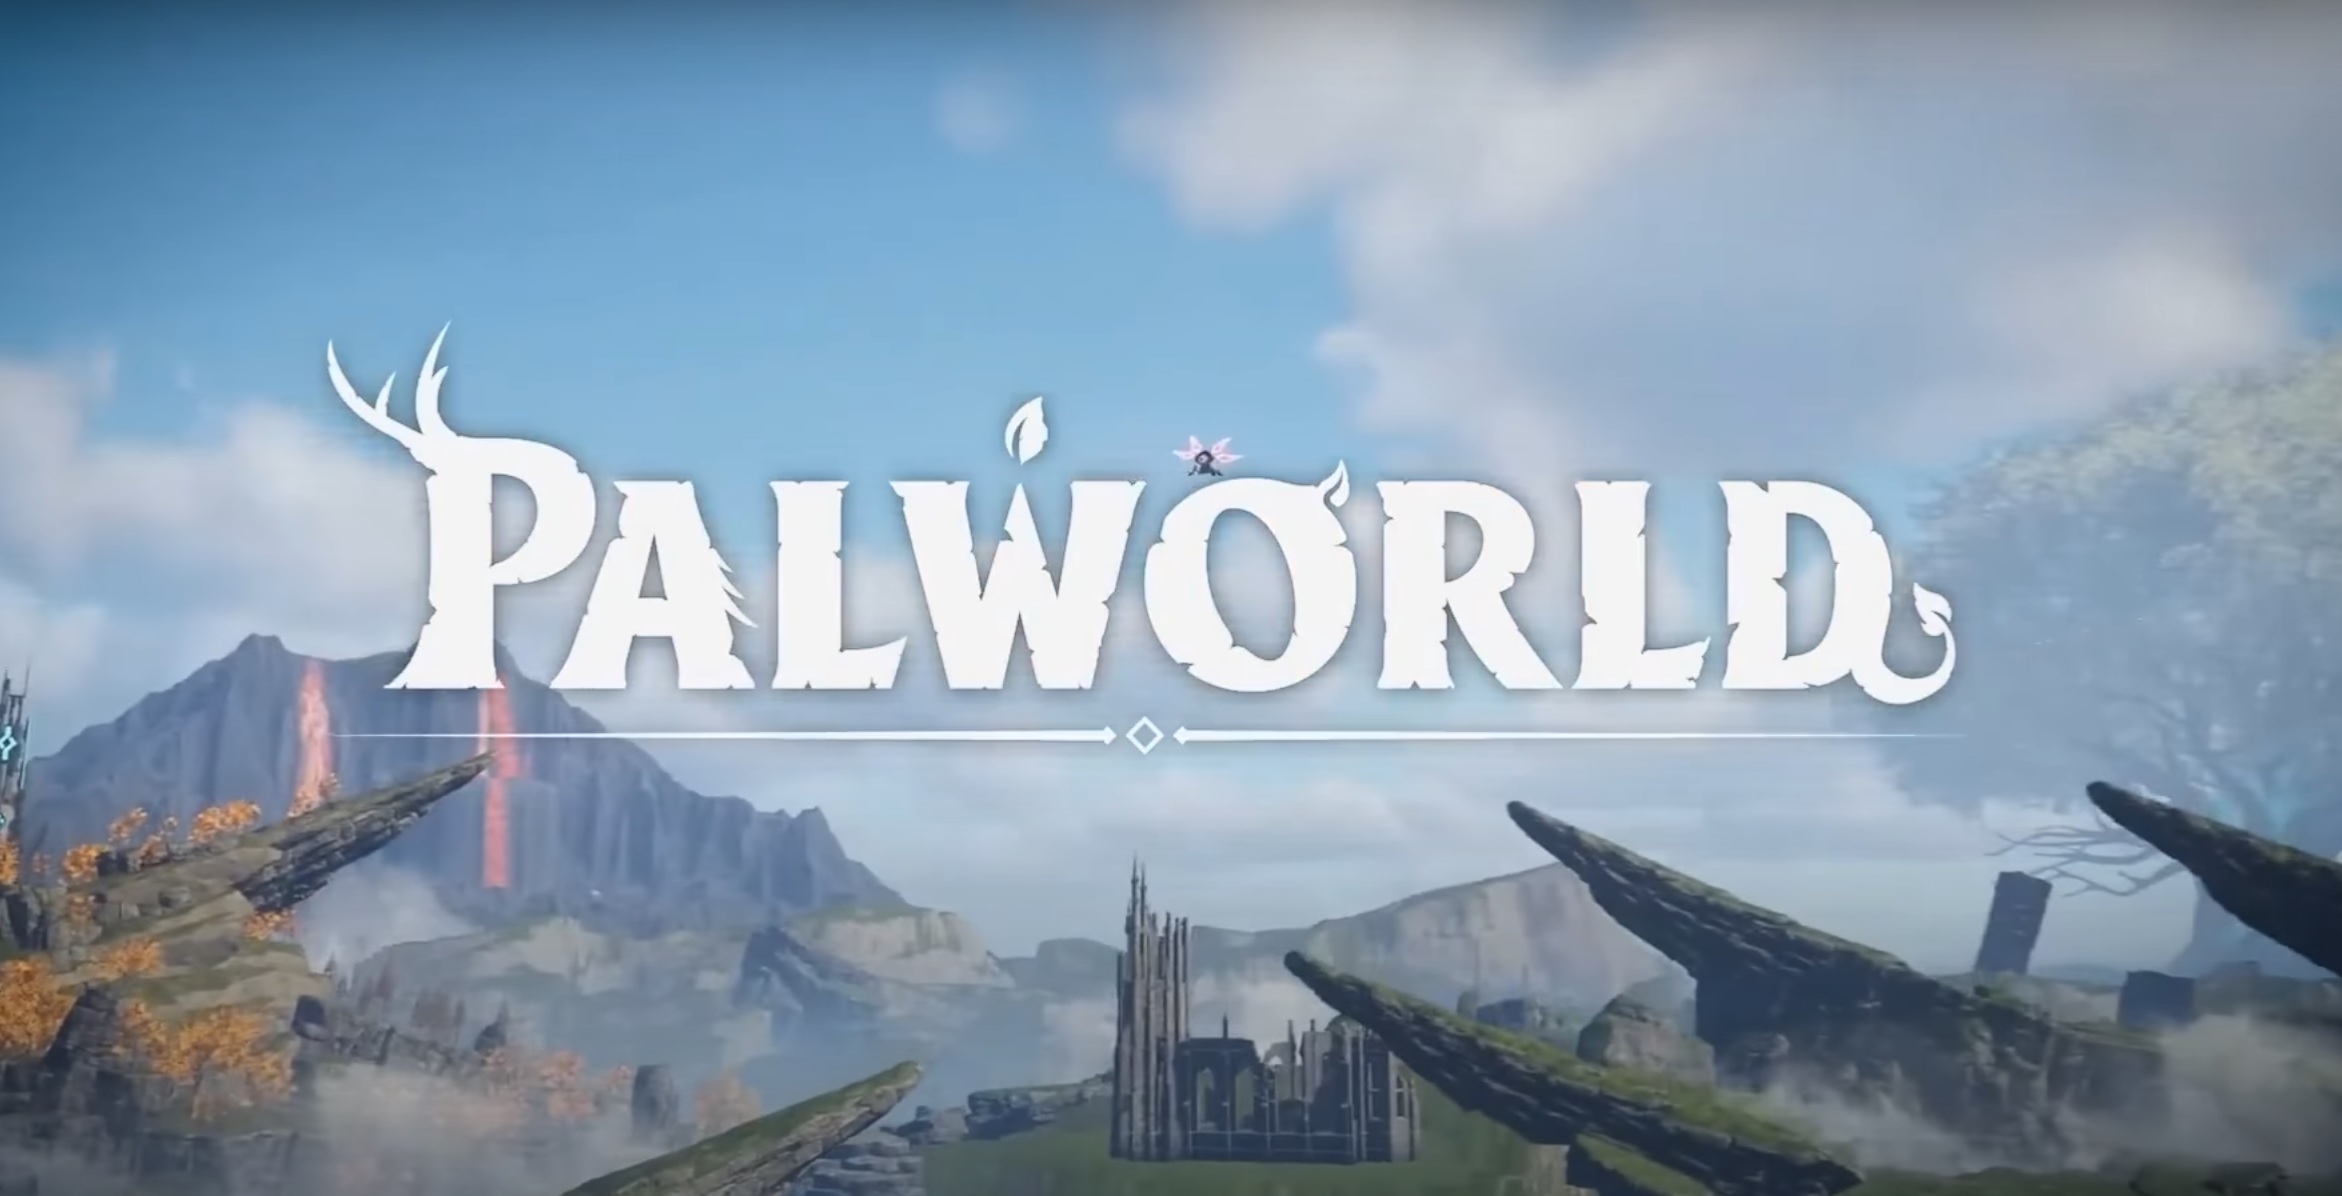 Palworld : pourquoi parle-t-on autant de ce jeu vidéo ?